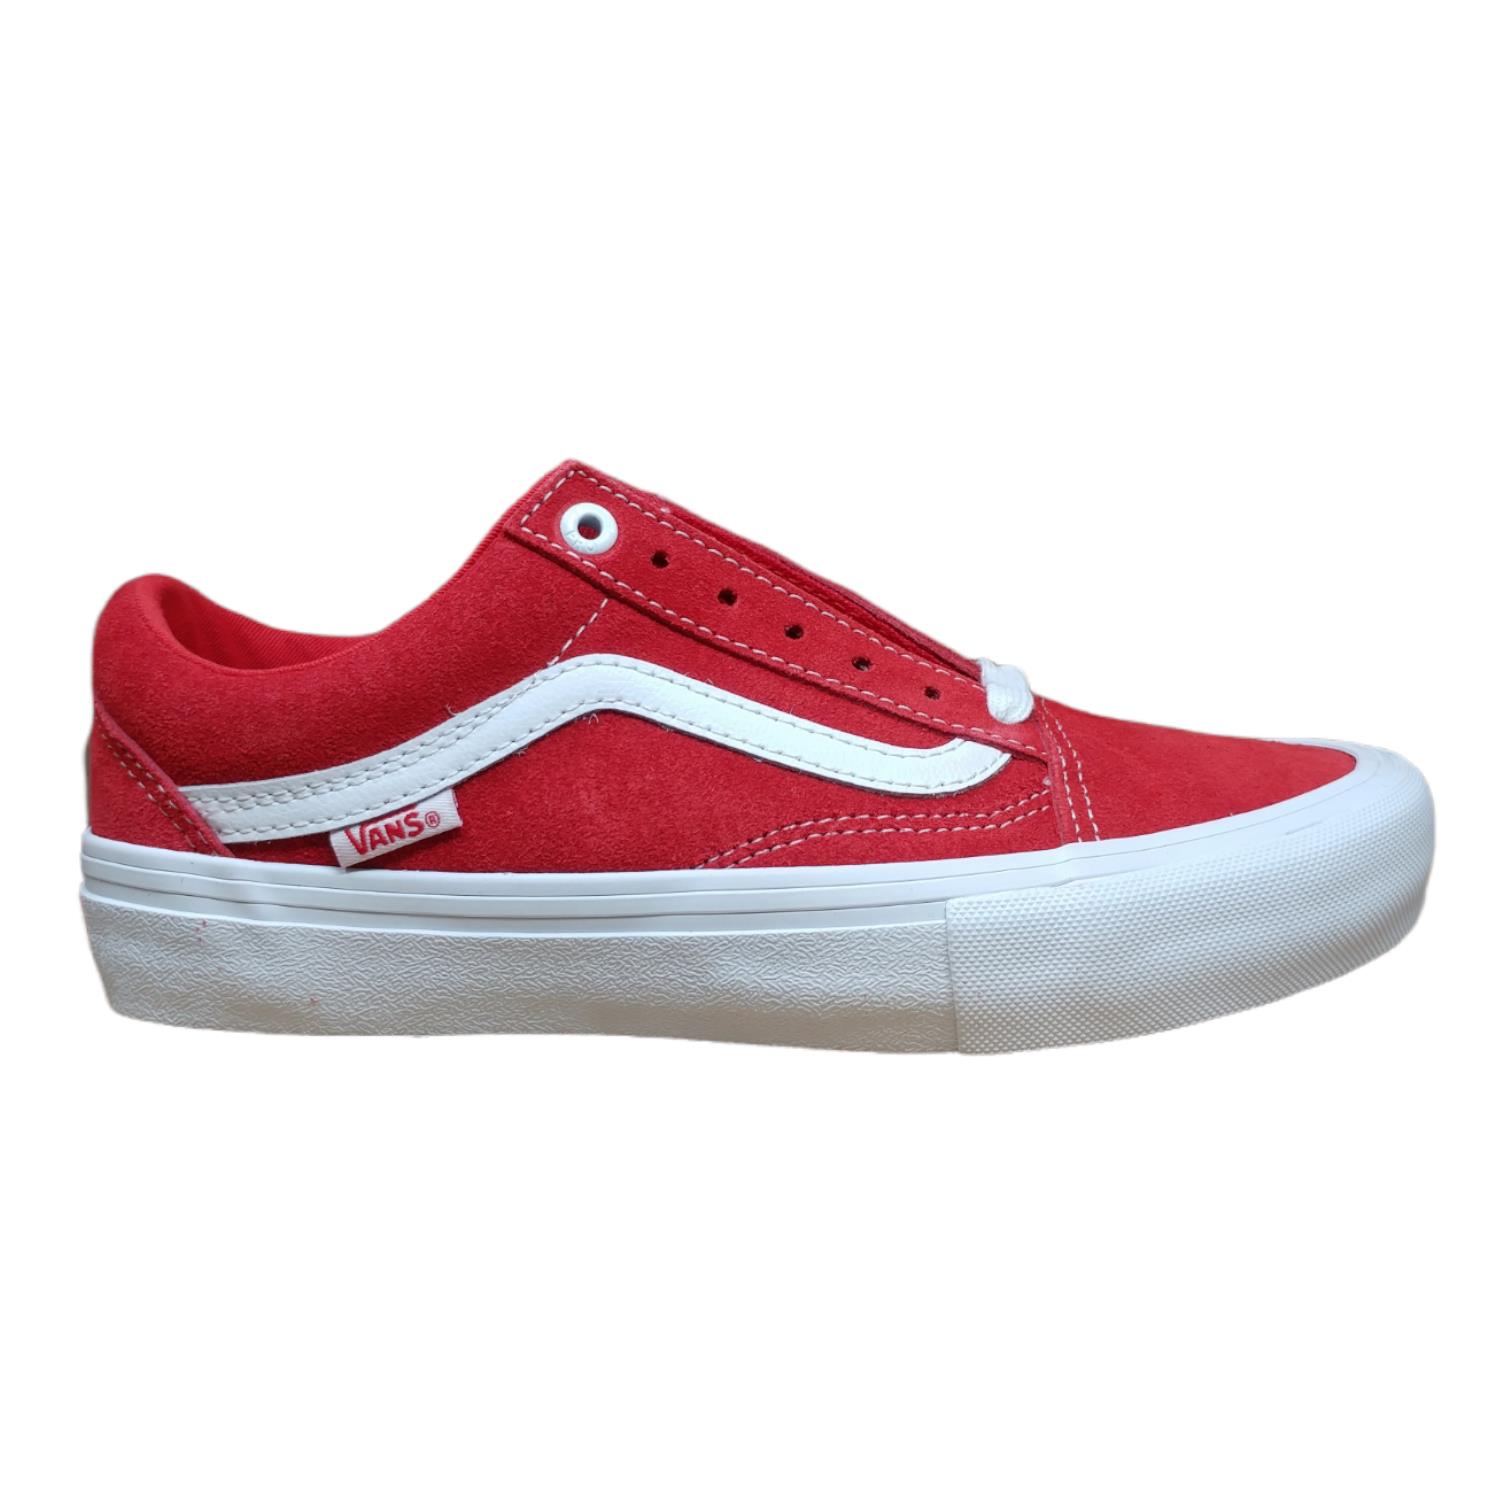 Vans Men`s Old Skool Pro Suede Skate Shoe - US Size 5.5 Red VN000ZD4AJL